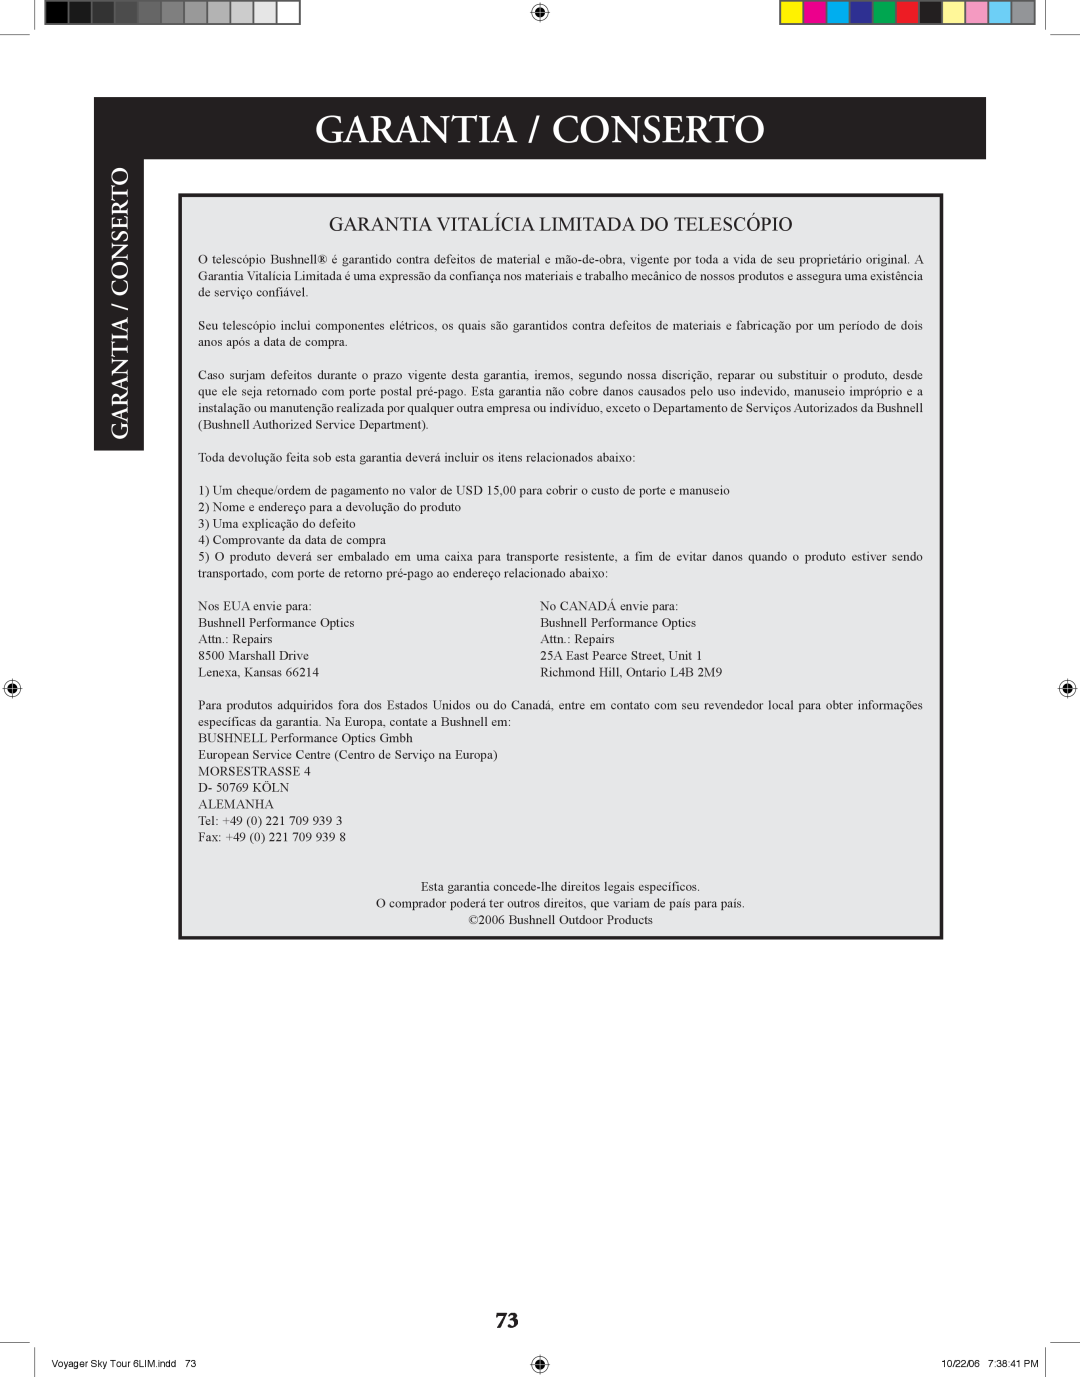 Bushnell 78-9960 instruction manual Garantia / Conserto 